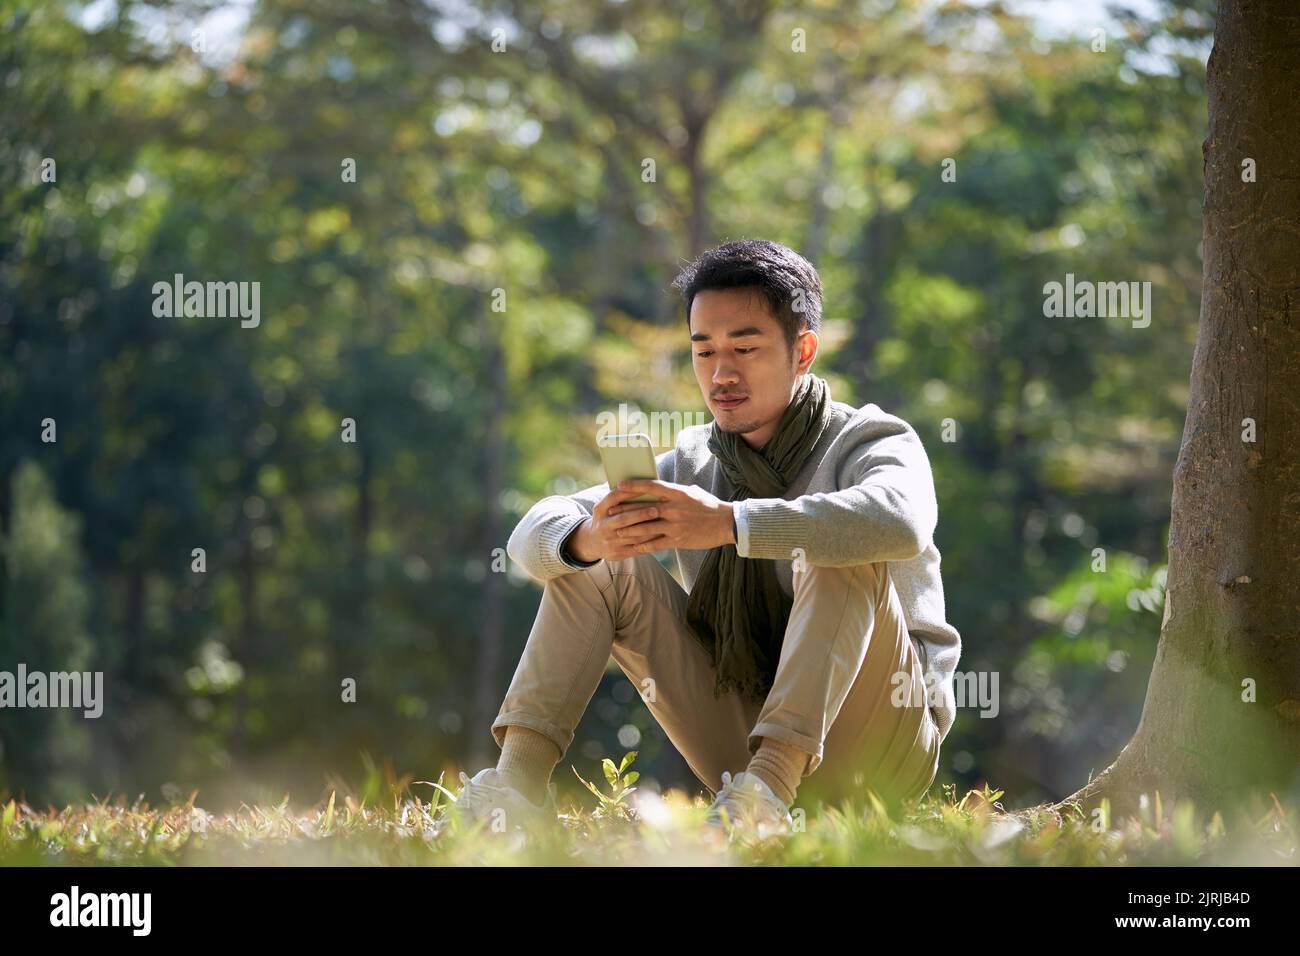 joven hombre asiático adulto sentado en la hierba en el parque mirando el teléfono celular Foto de stock